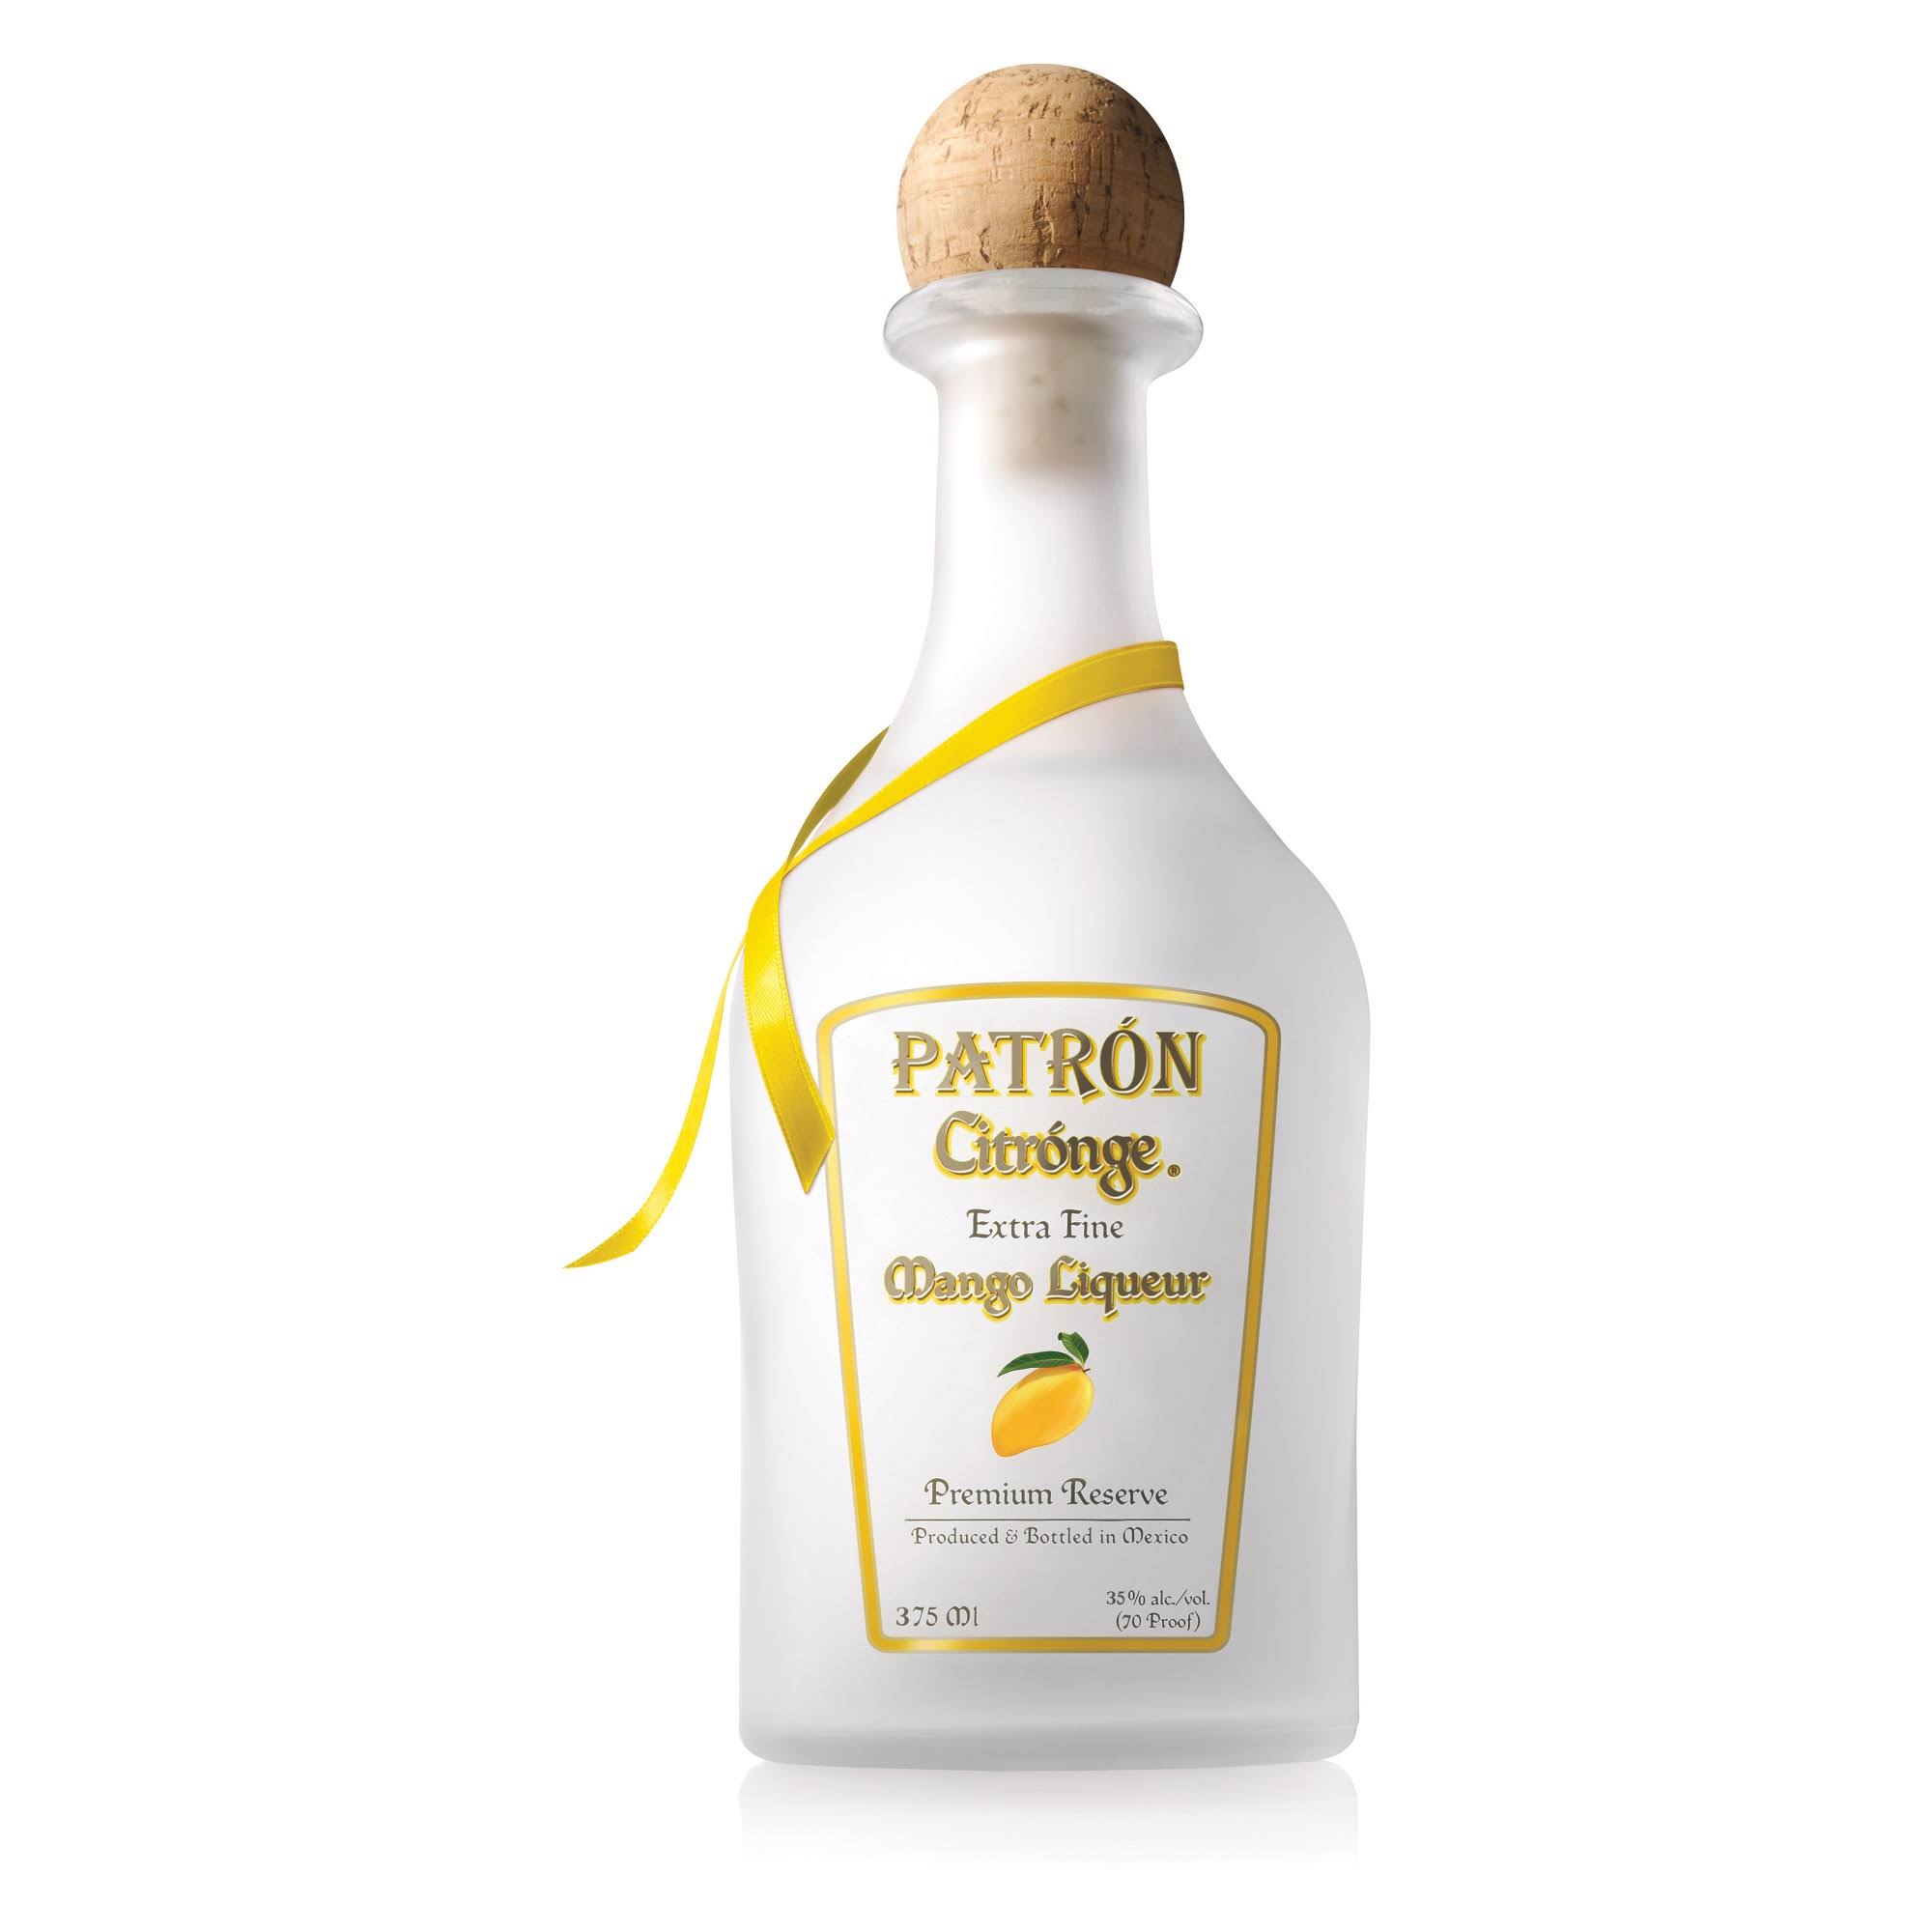 Patron Citronge Mango Tequila 37.5cl